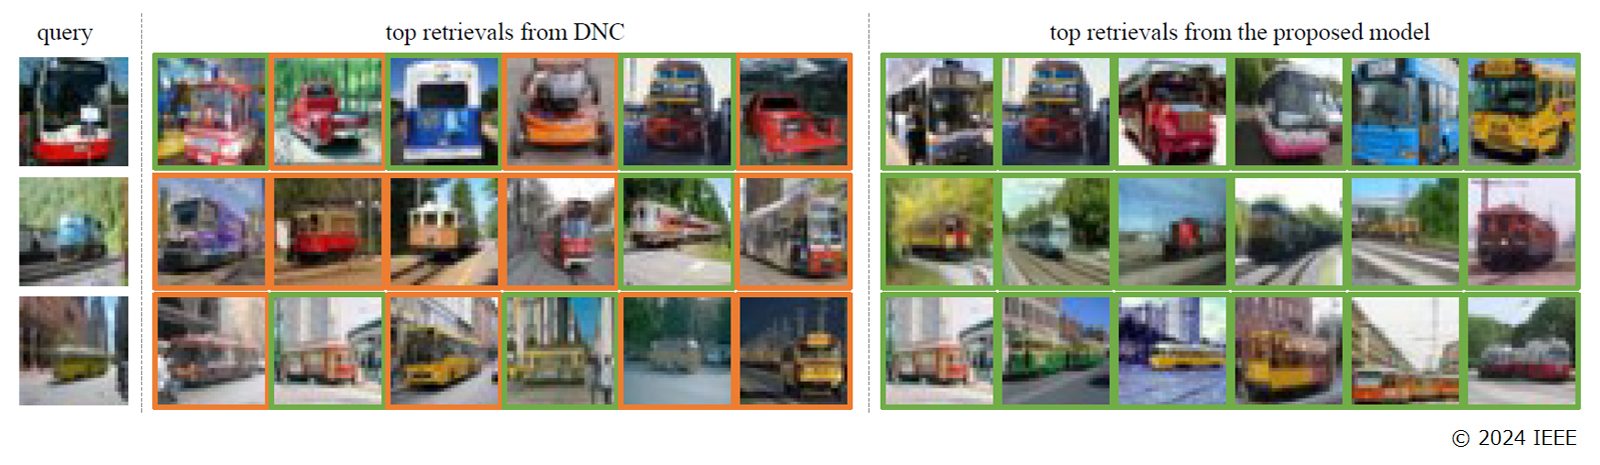 同一カテゴリの画像を探してくる（query）タスクにおける、従来法DNC（左）と提案法（右）の認識結果